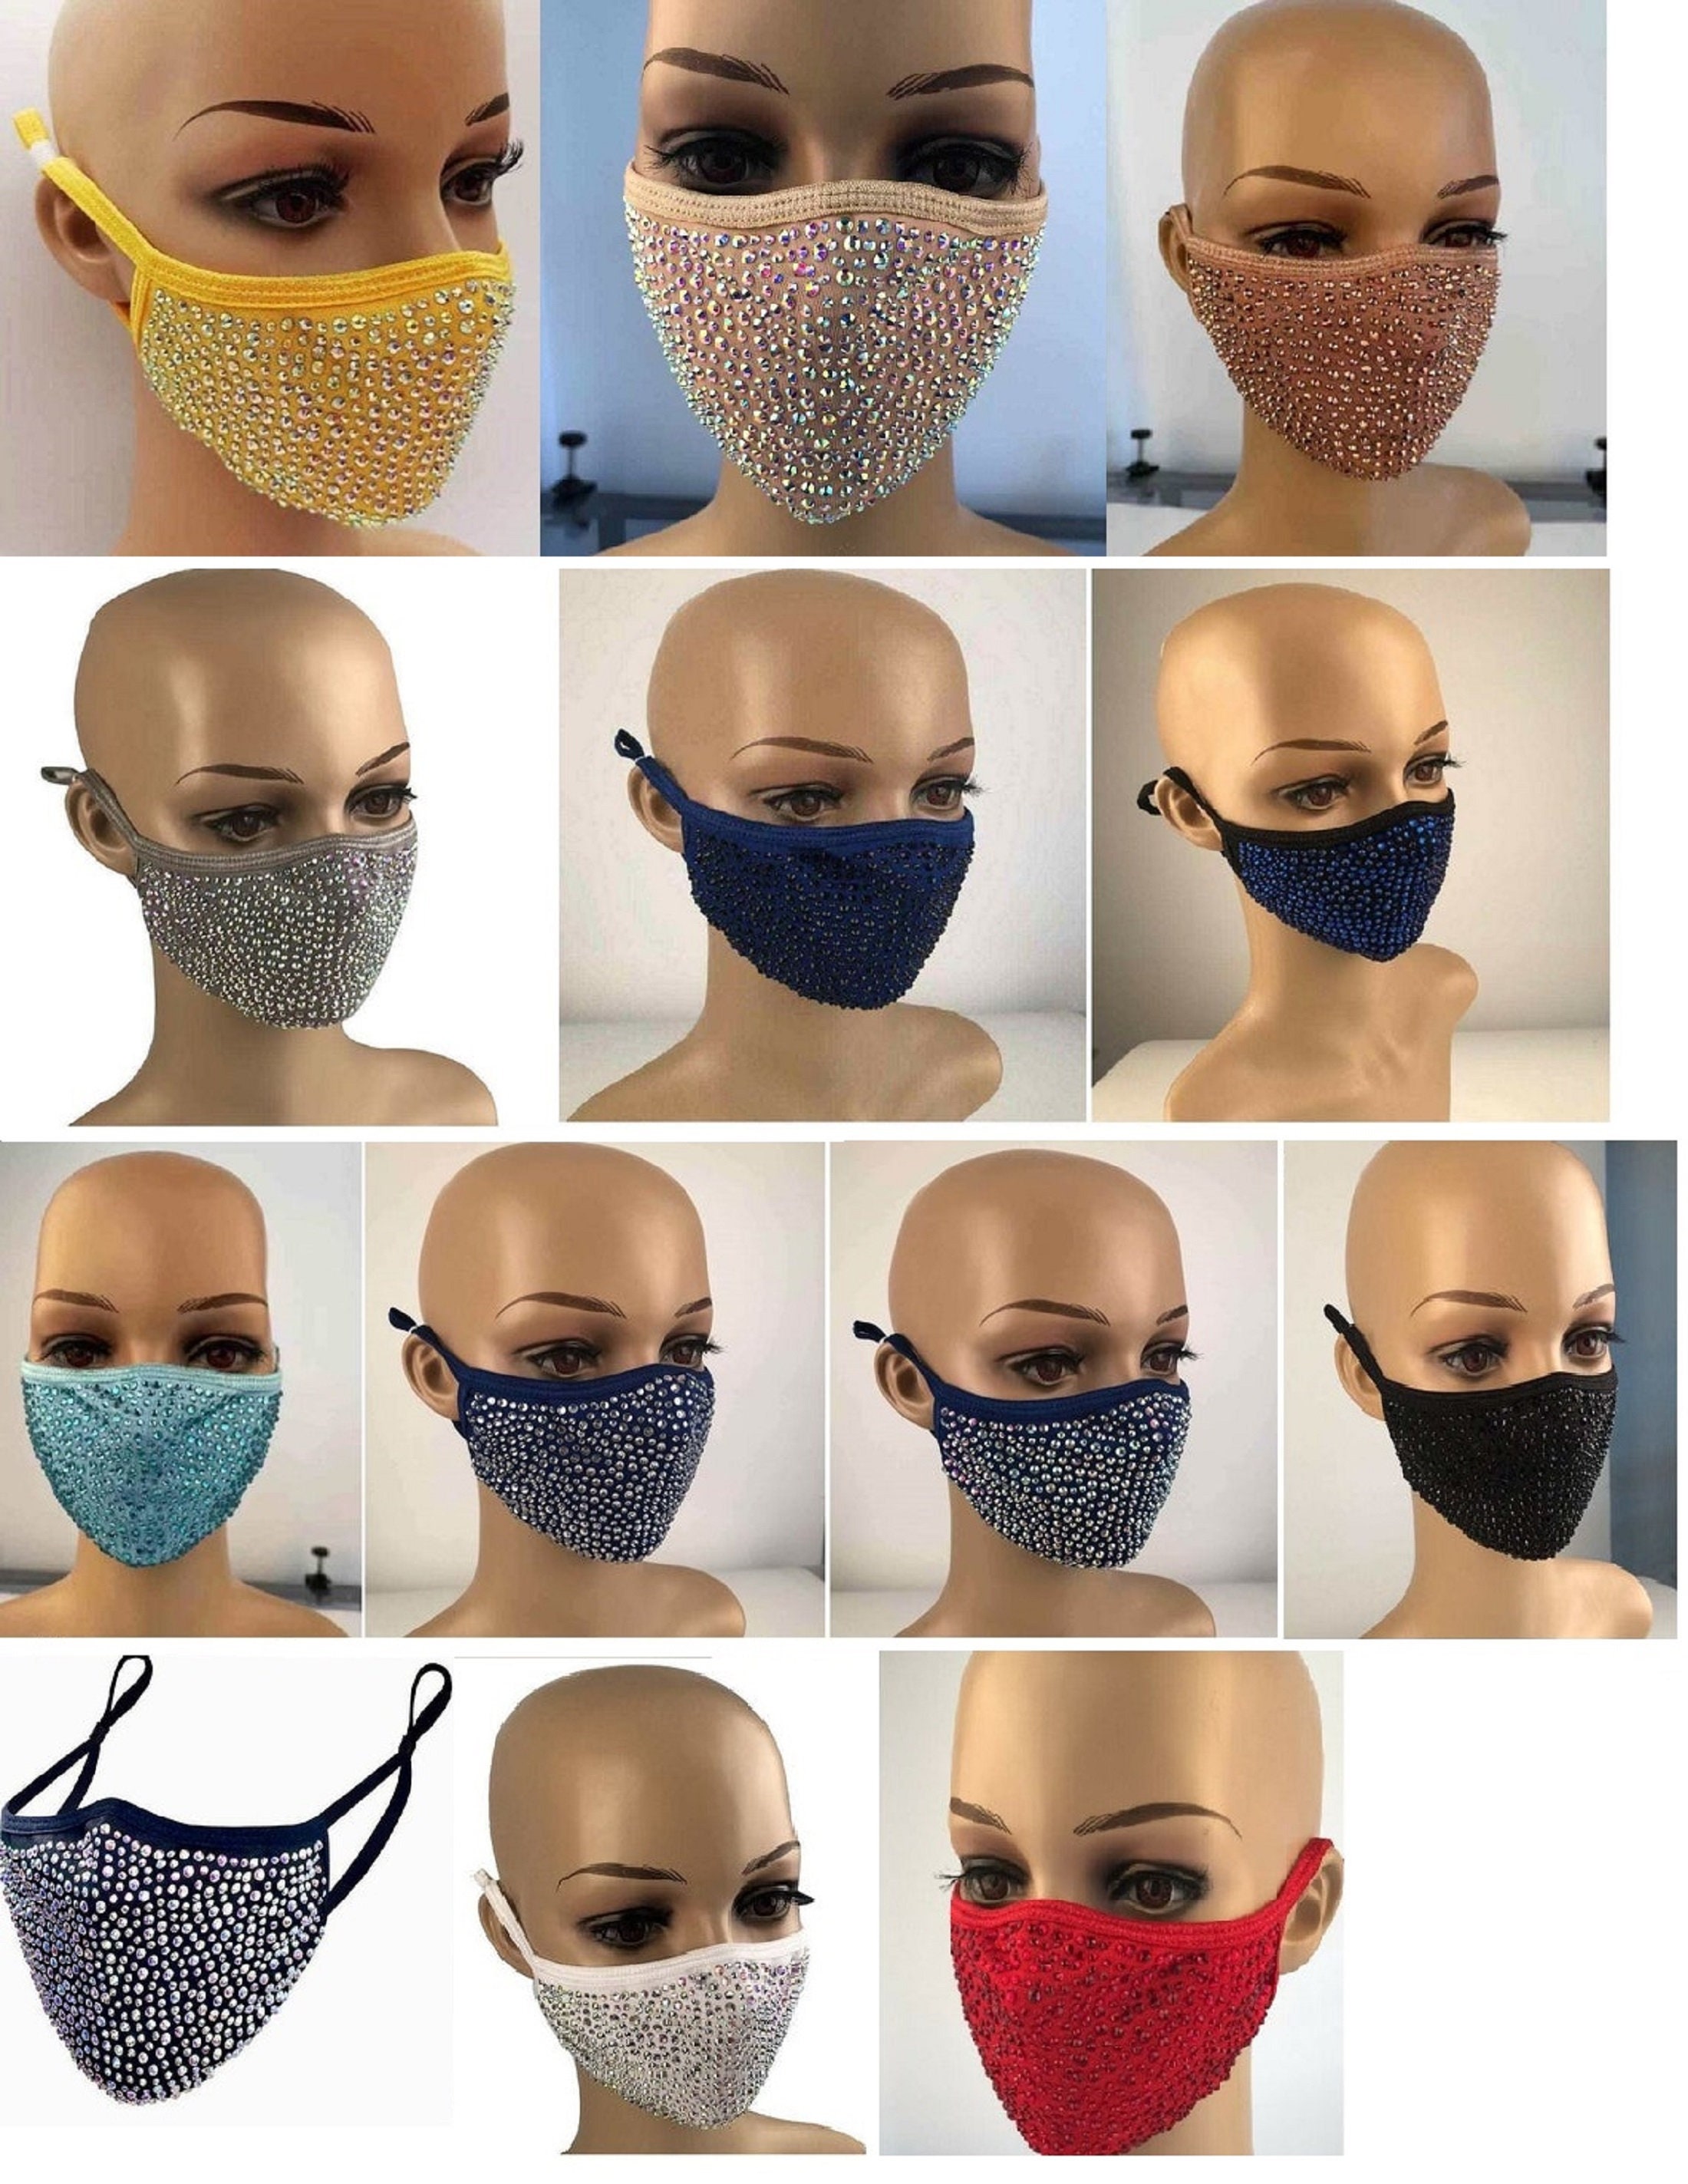 LV Inspired Bling Mask